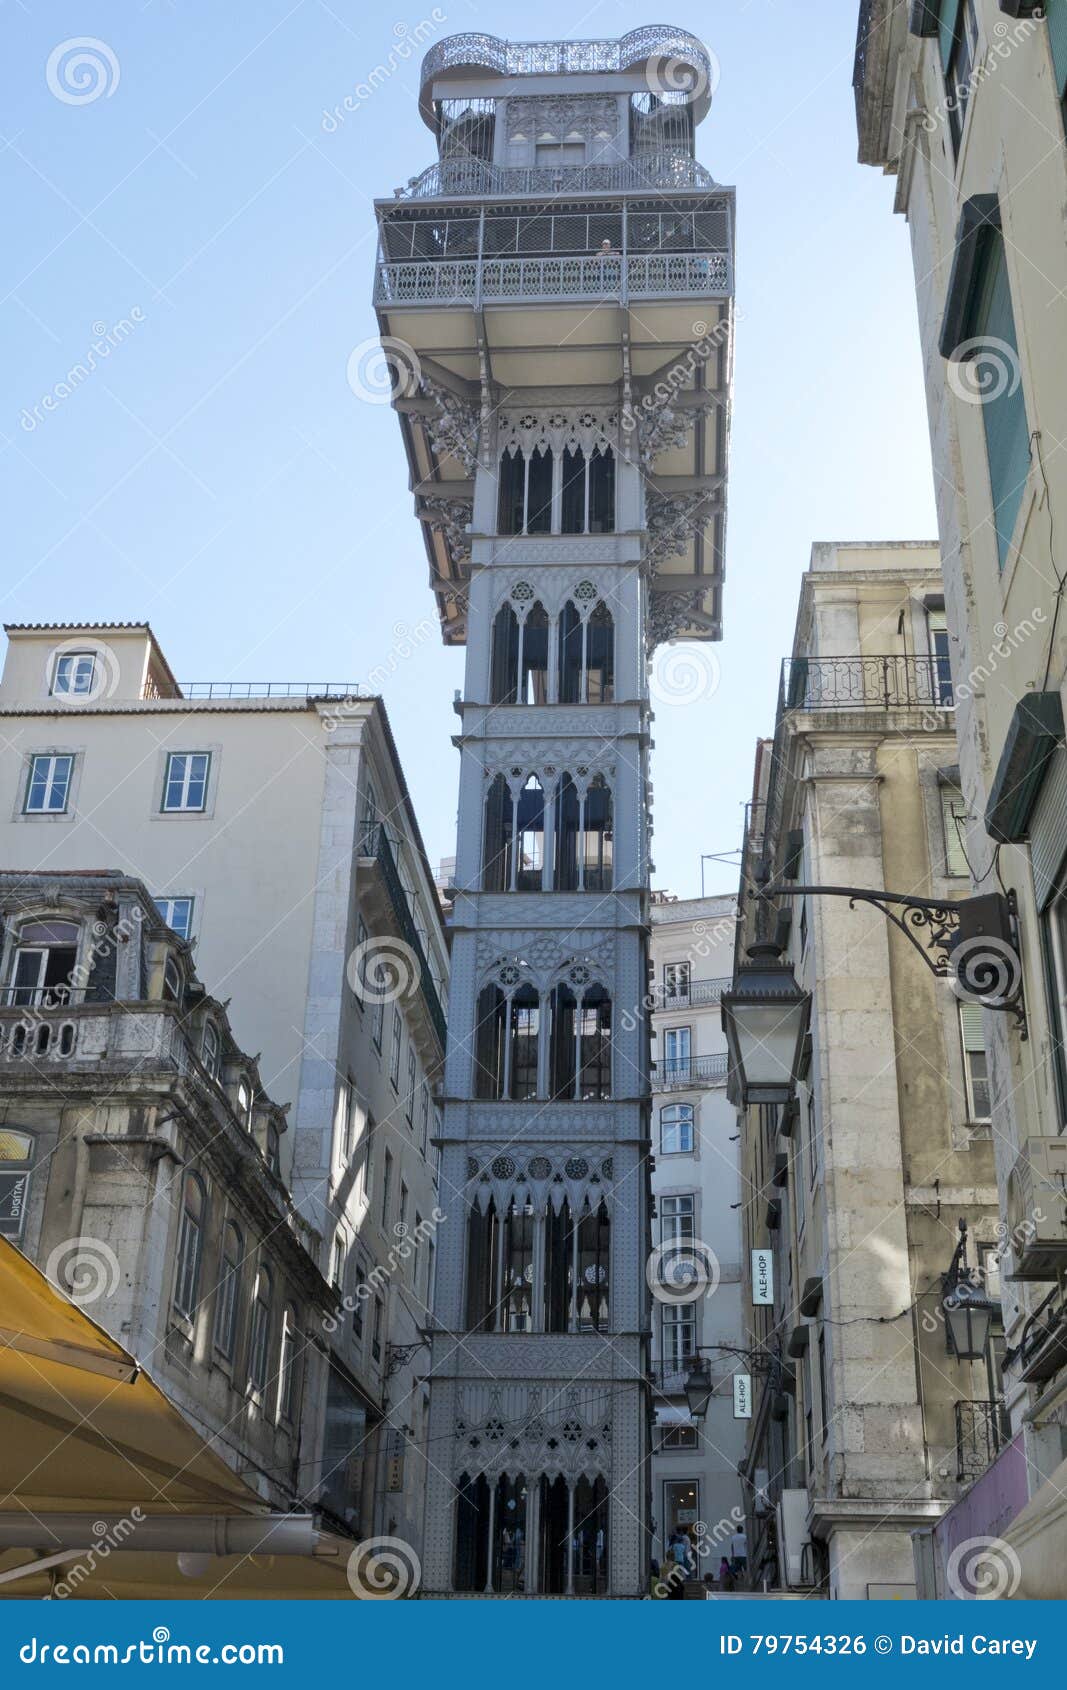 elevador de santa justa - baixa chiado, lisbon portugal